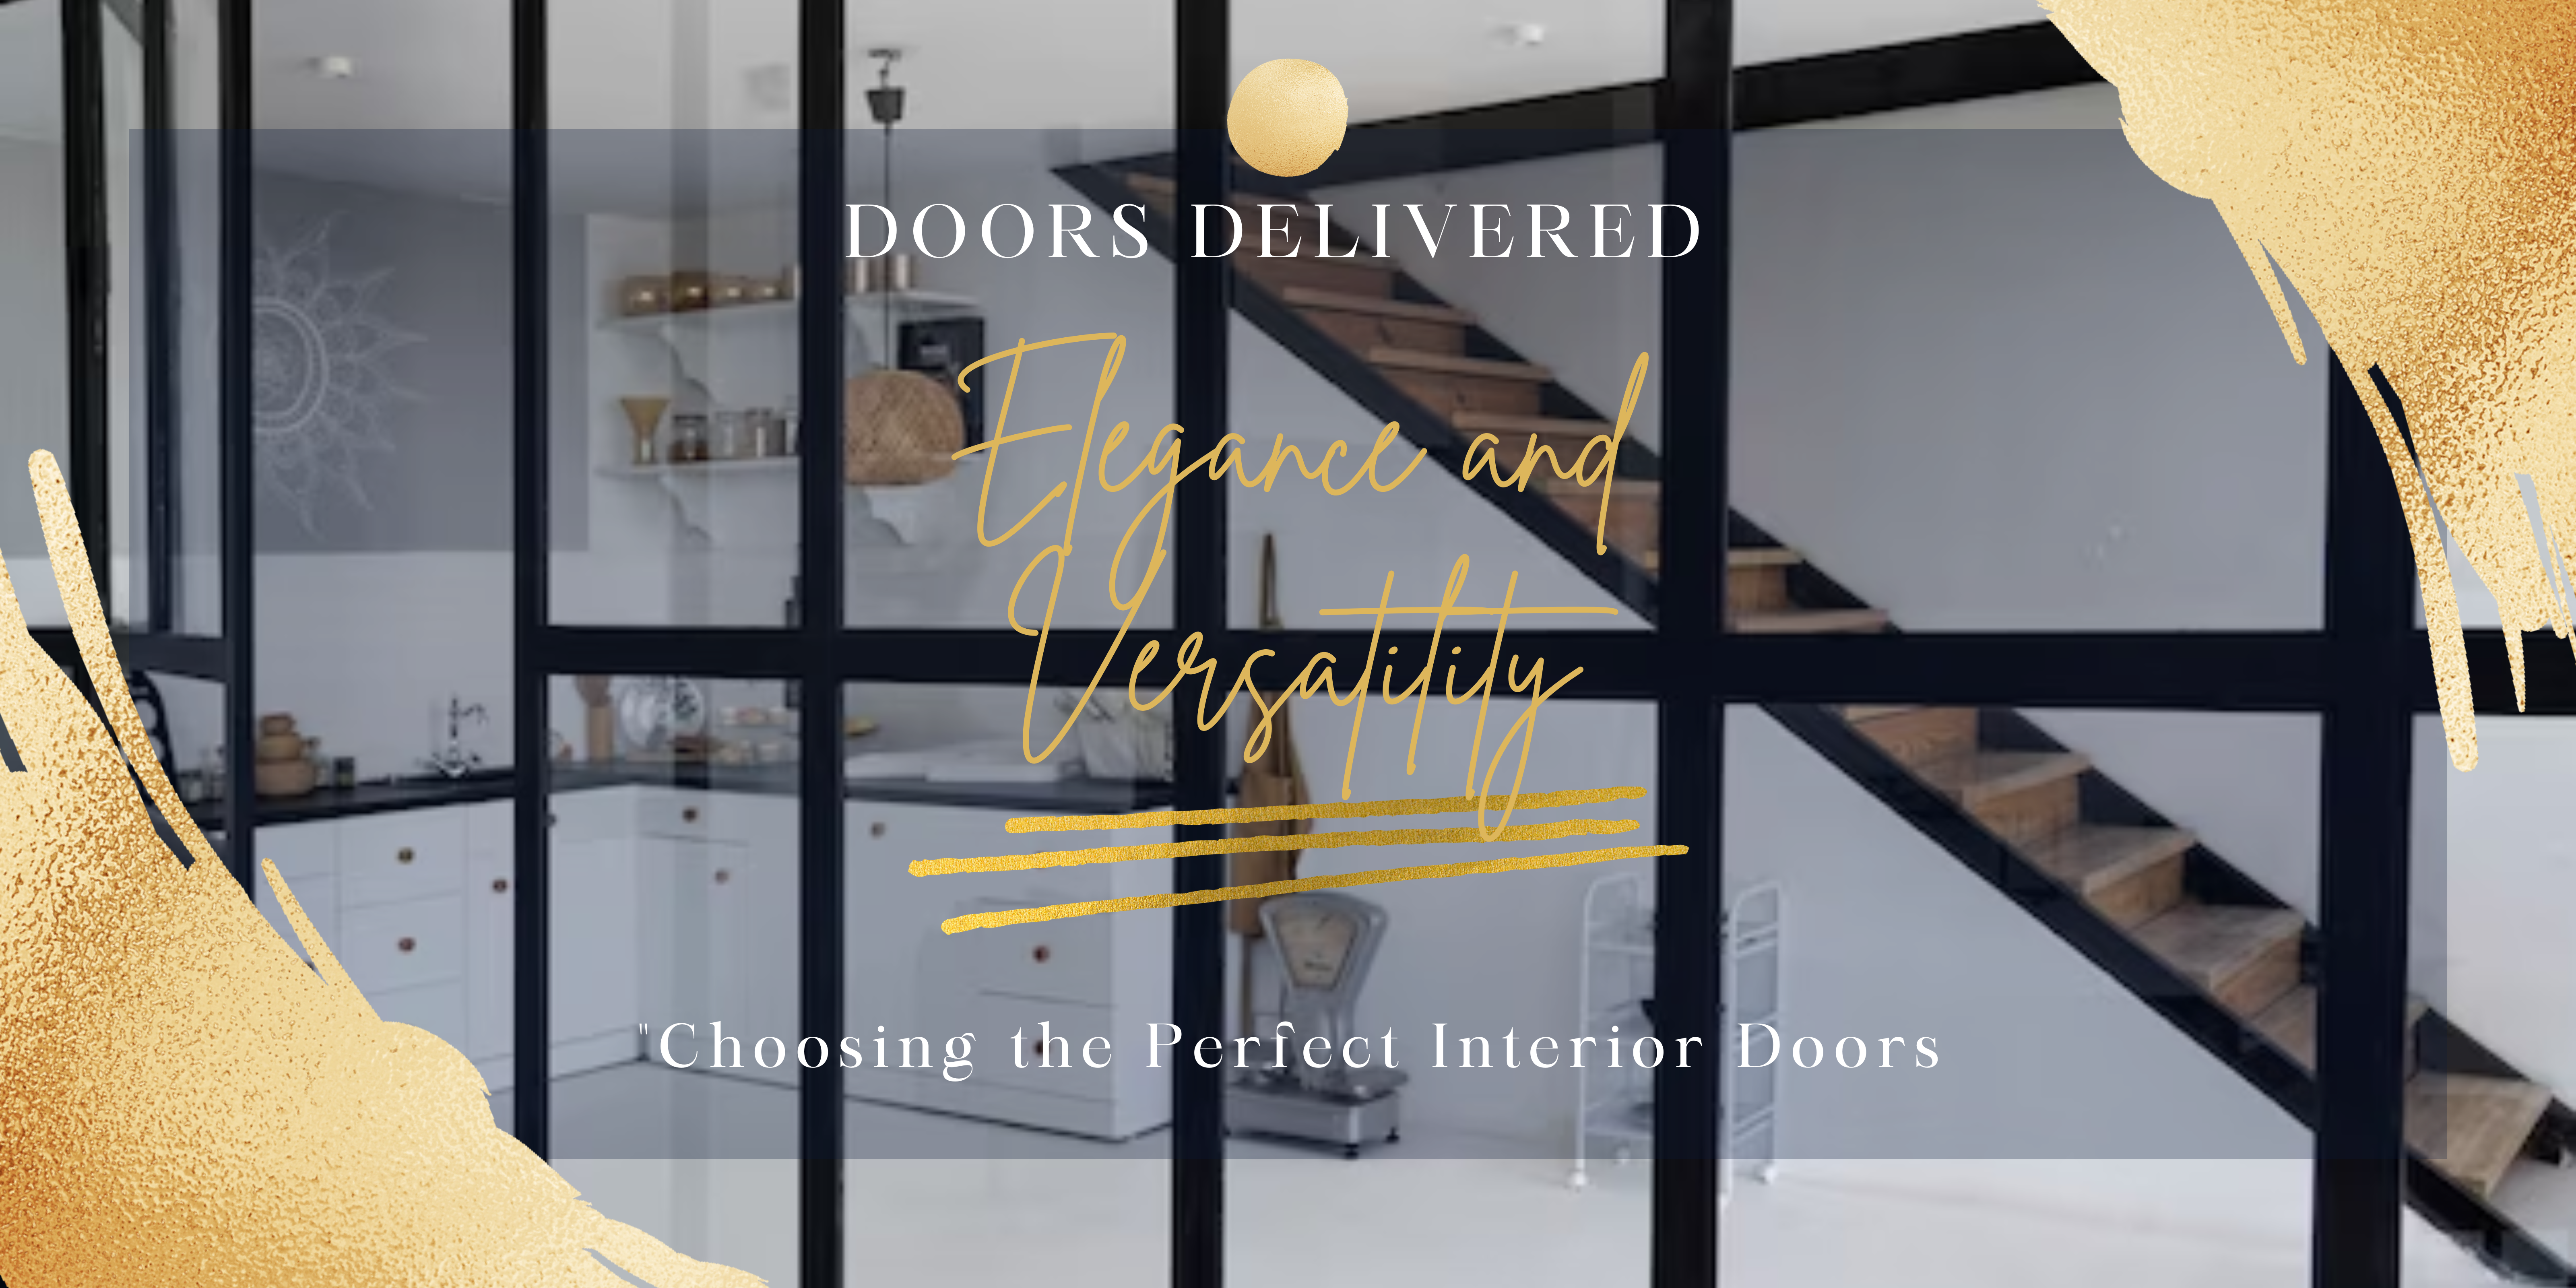 Internal Doors with Glas Doors Delievred